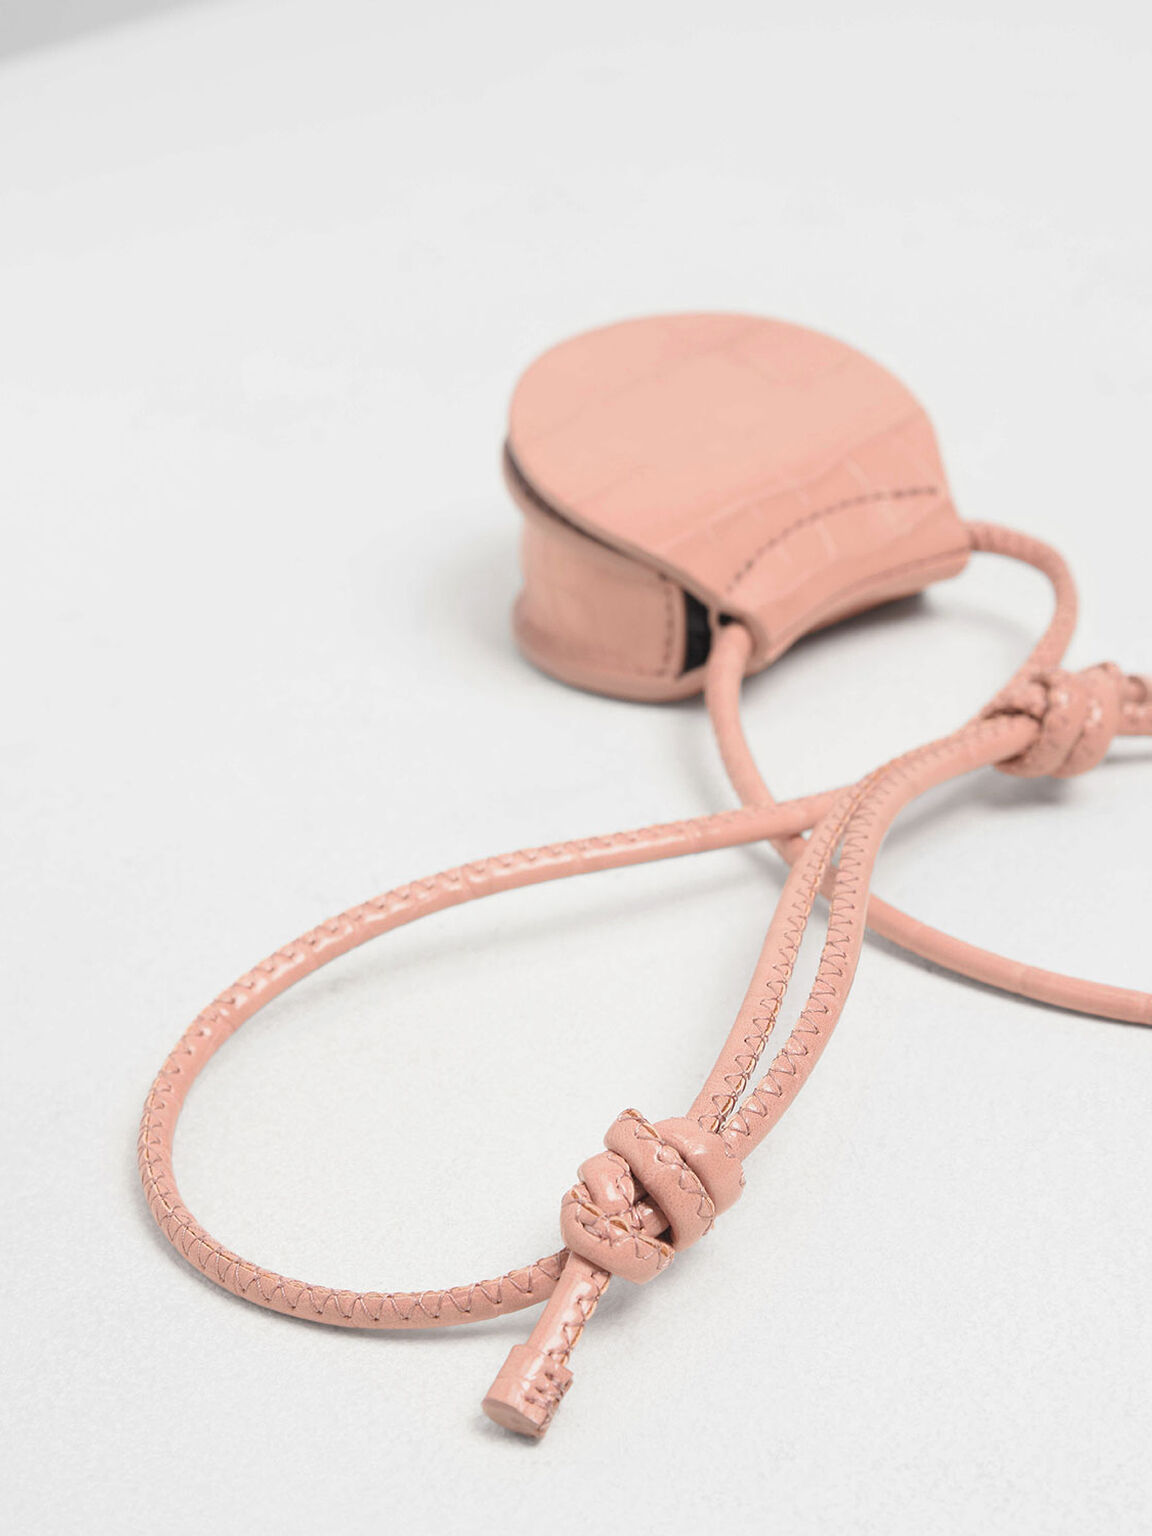 Croc-Effect Necklace Bag, Pink, hi-res